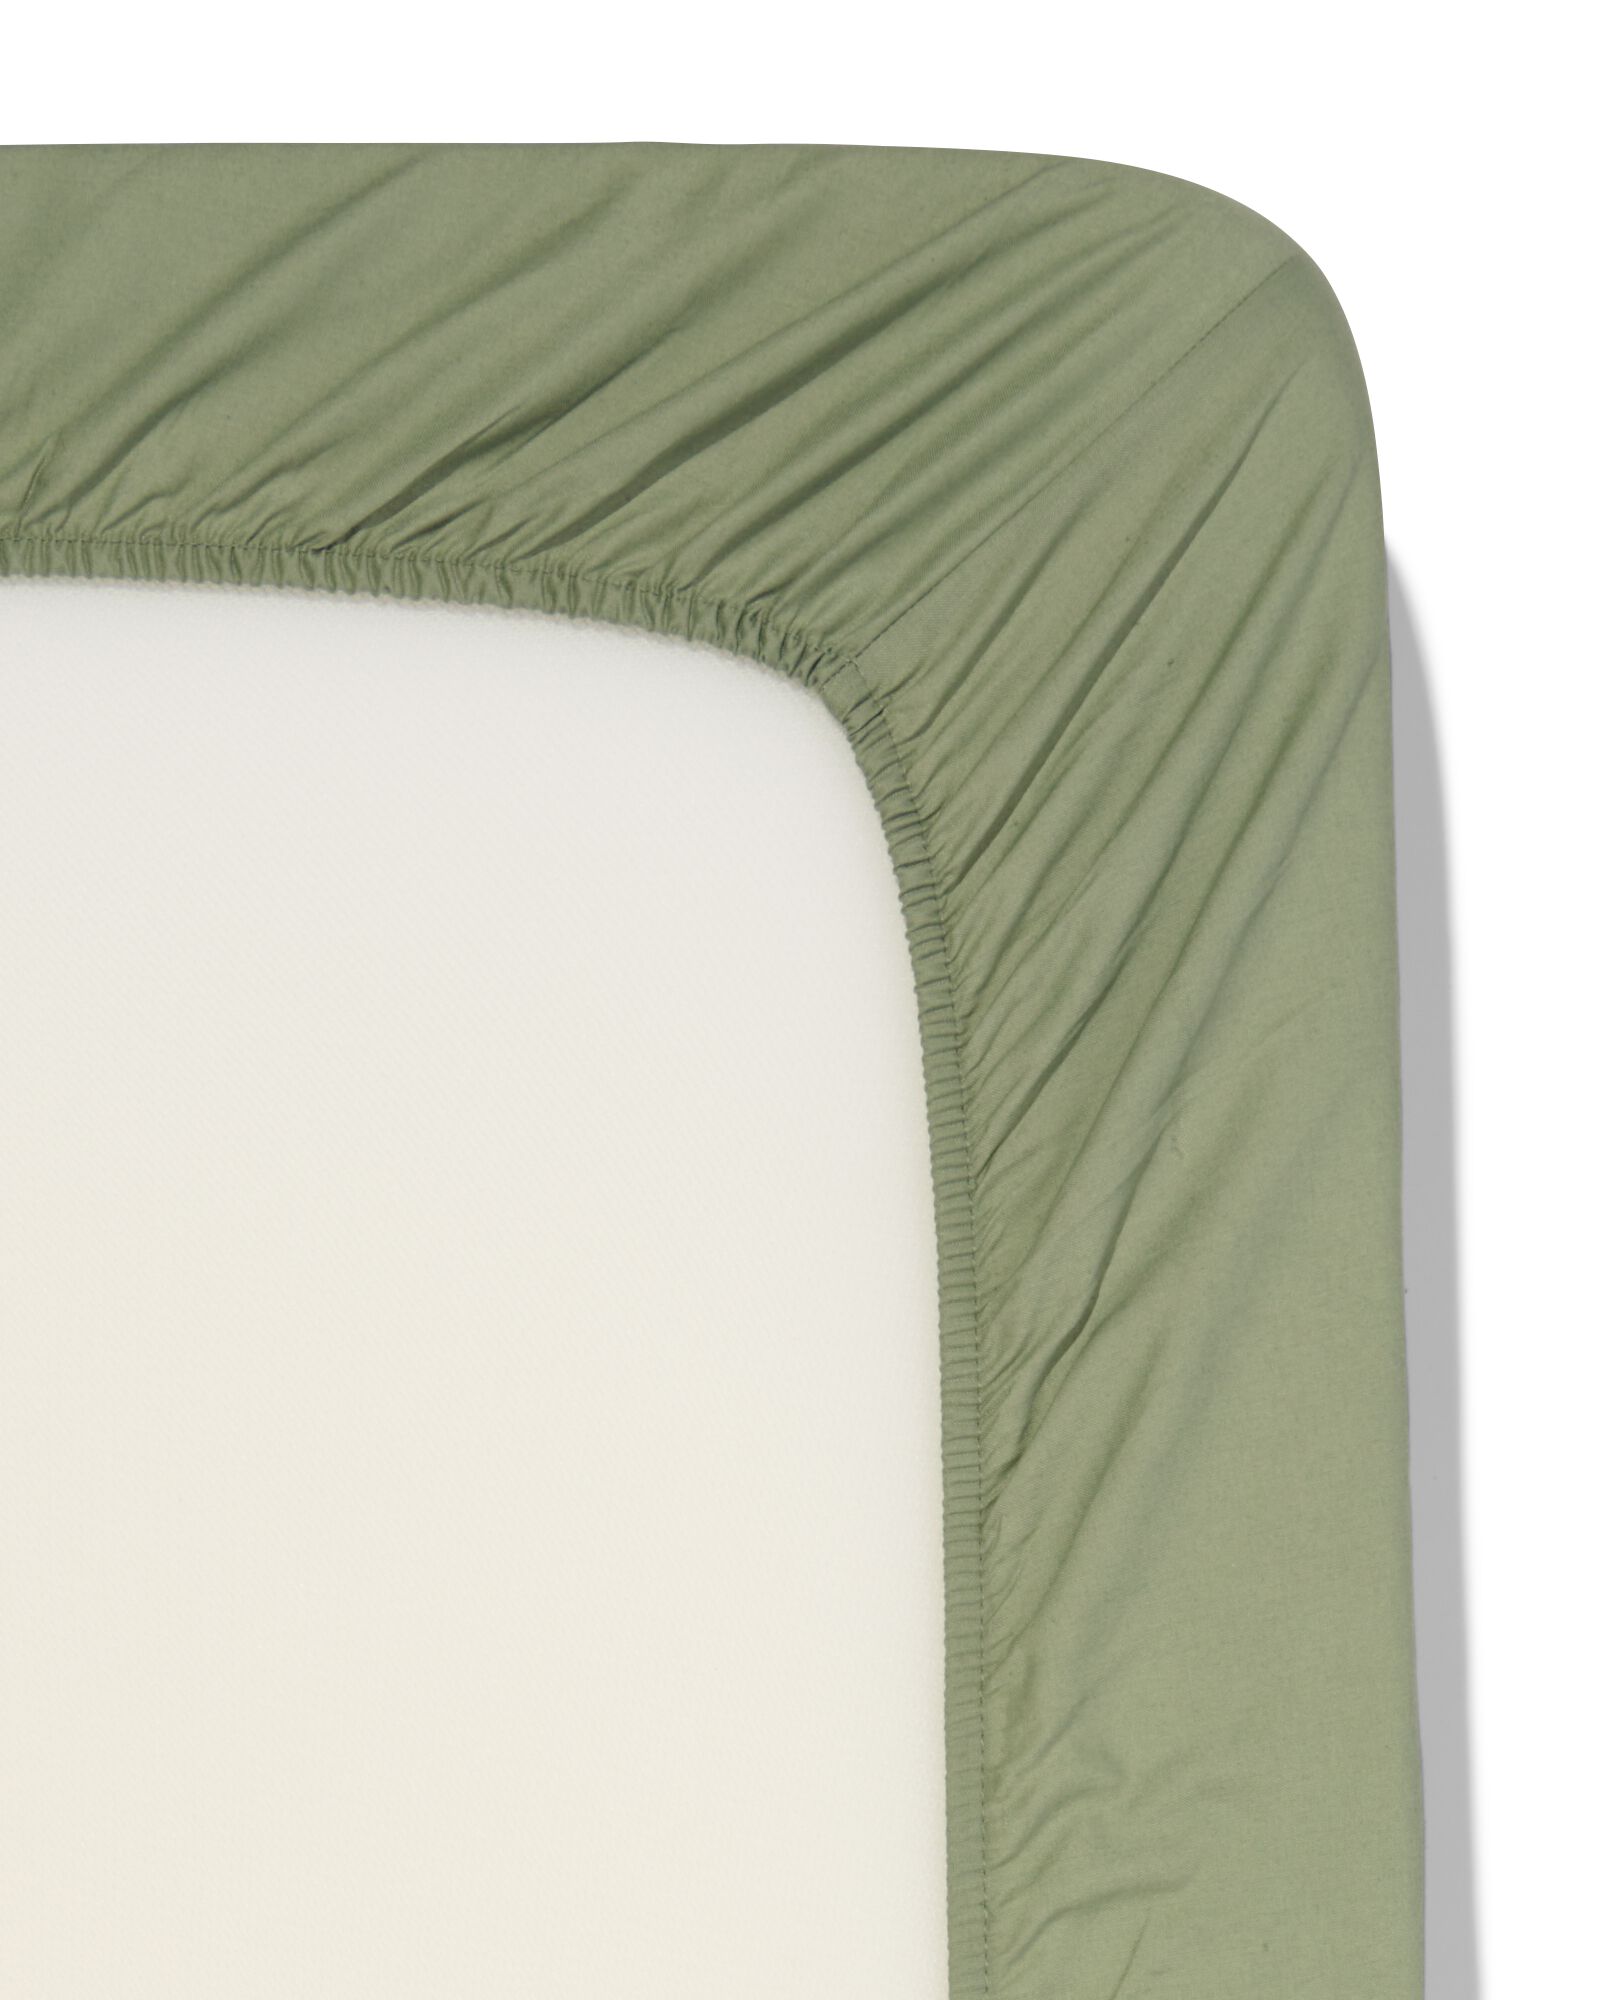 Spannbettlaken, Soft Cotton, 180 x 200 cm, grün - 5190060 - HEMA